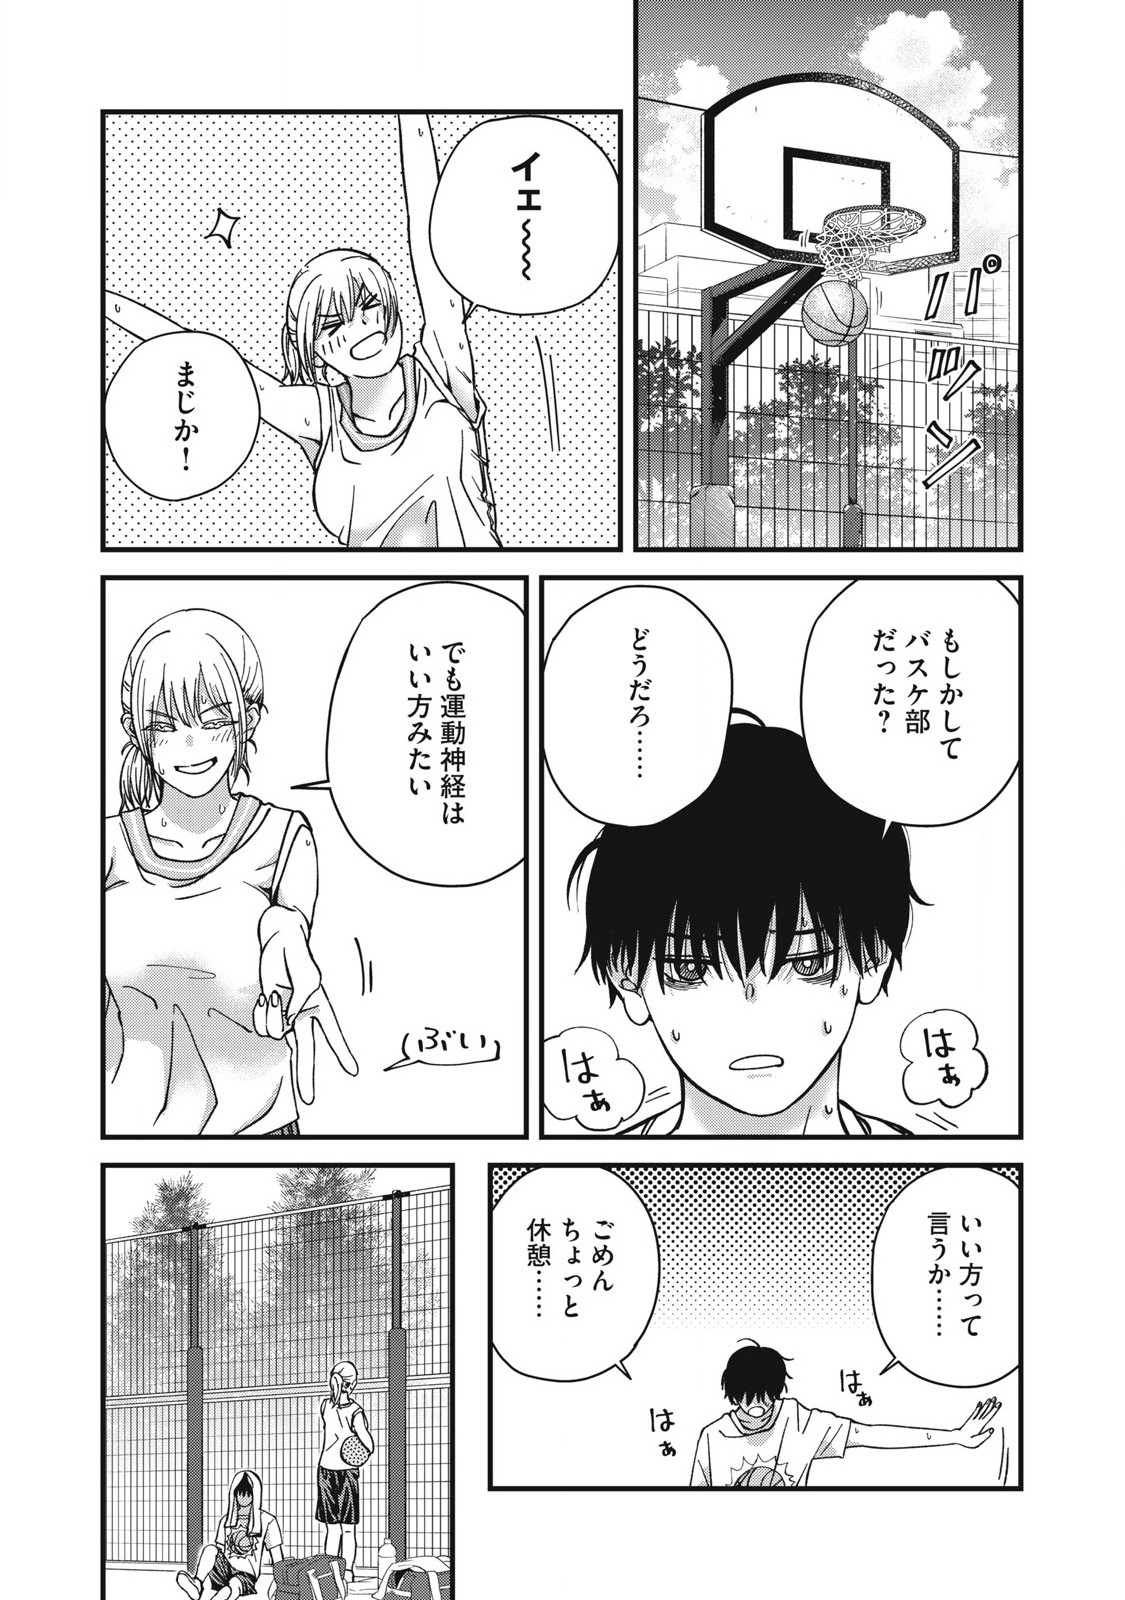 Otona ni Narenai Bokura wa - Chapter 10 - Page 3